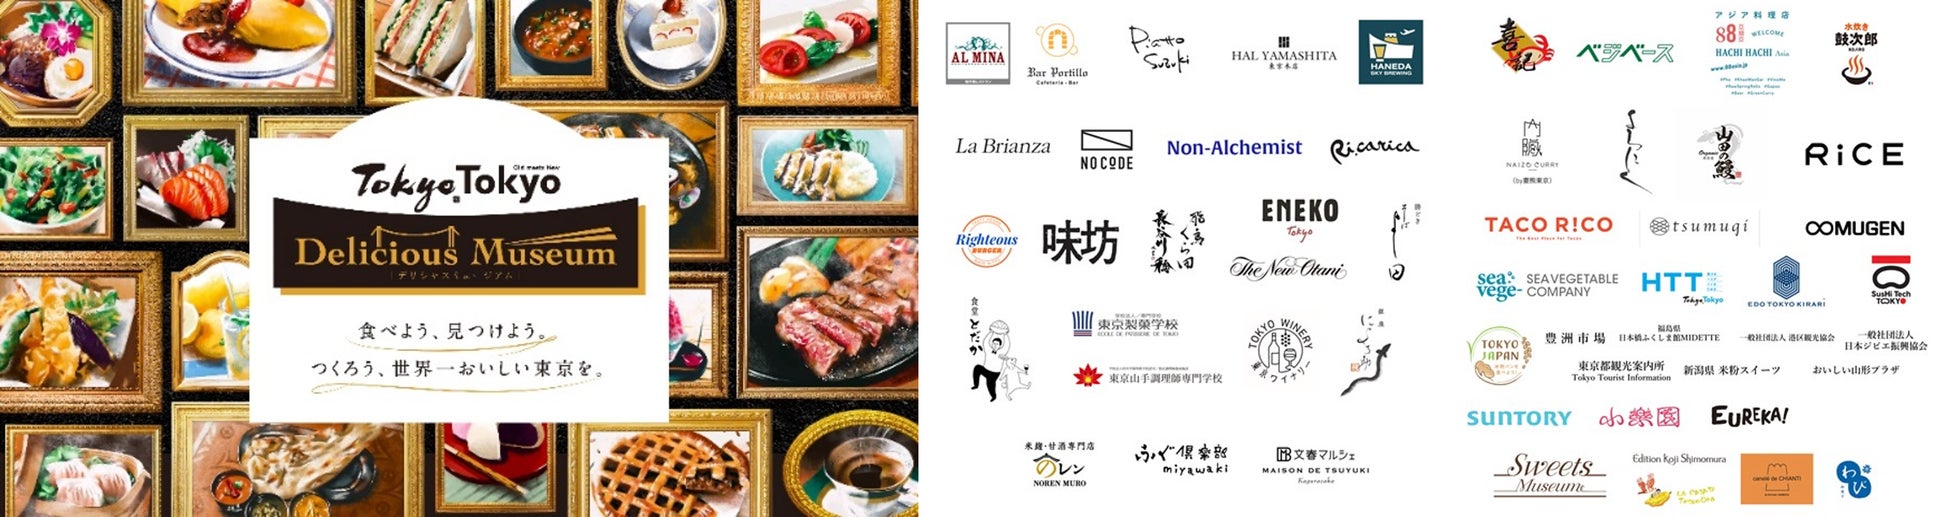 【川崎日航ホテル】かながわブランド登録の県産品や川崎市内産の食材を楽しむ「かながわ・かわさき地産地消フェア」開催